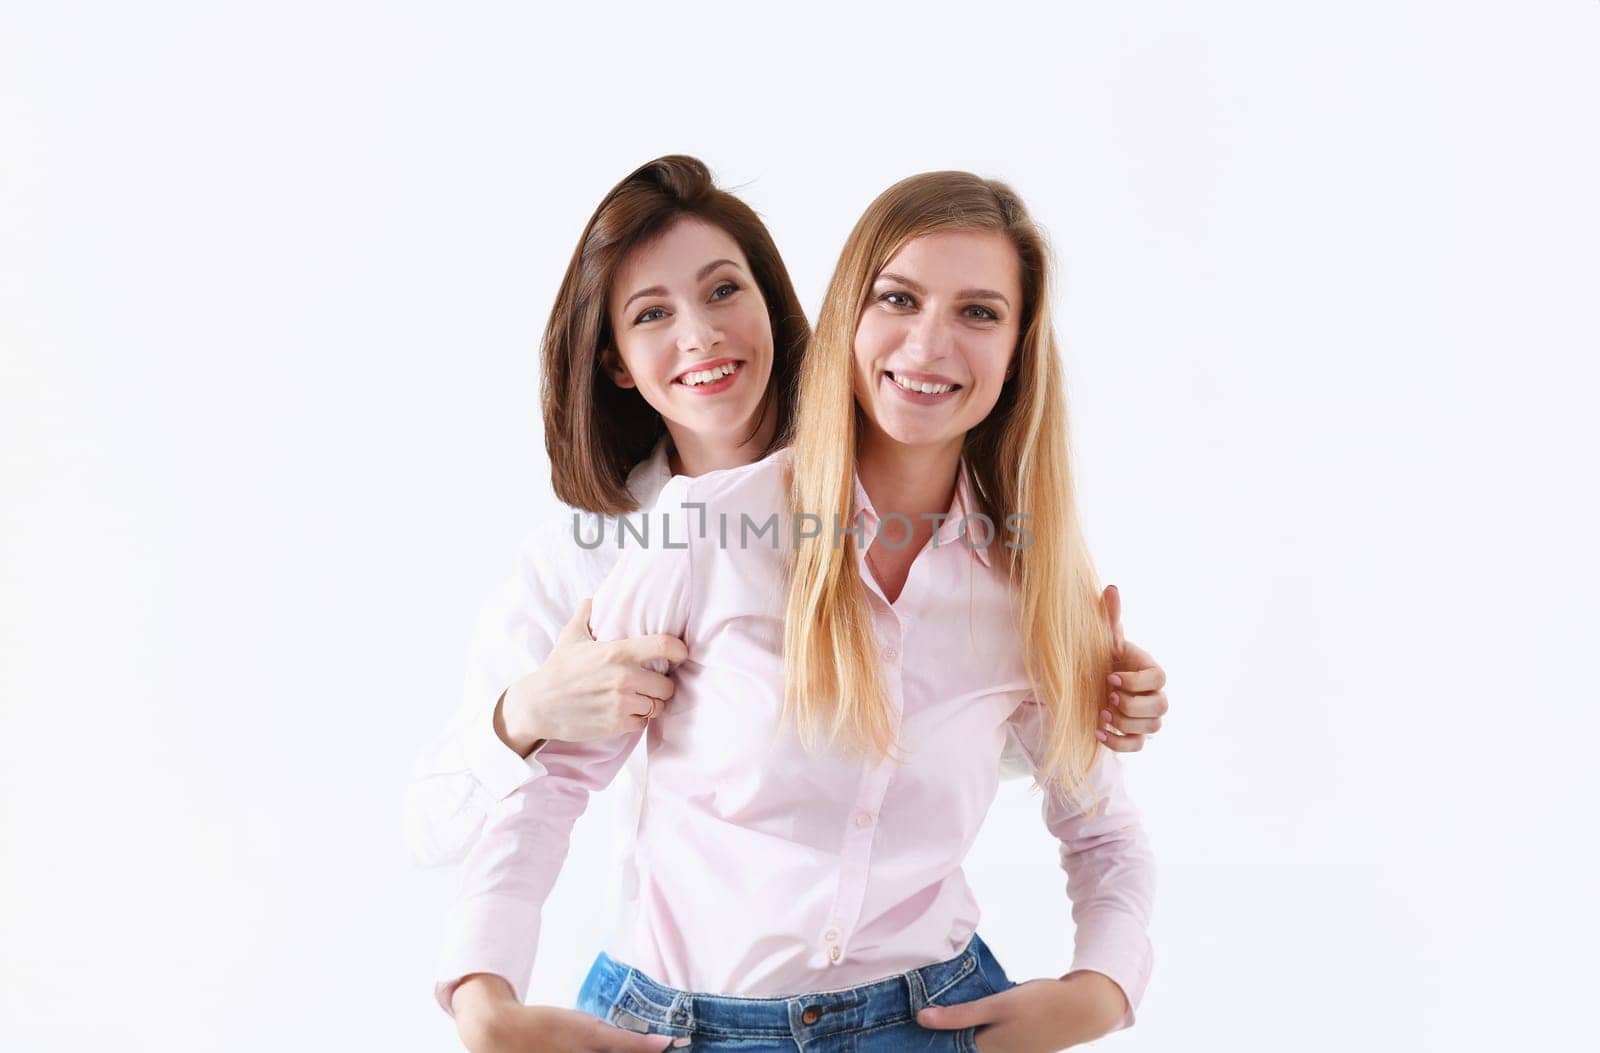 Two smiling happy joyful female friends portrait by kuprevich